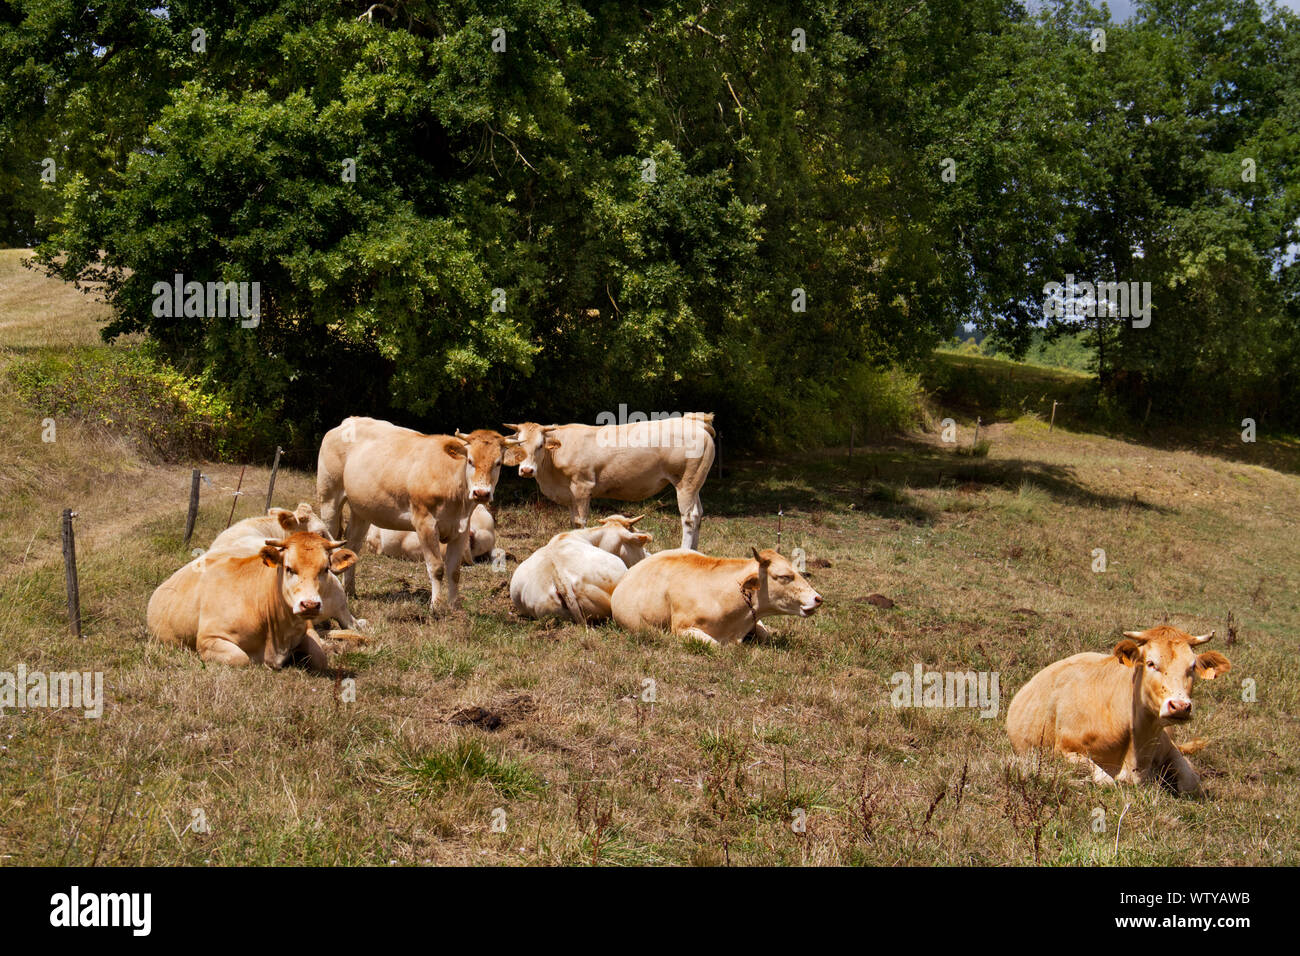 Rebaño de vacas lecheras Jersey marrón perezoso en una pradera en Francia en un día caliente Foto de stock